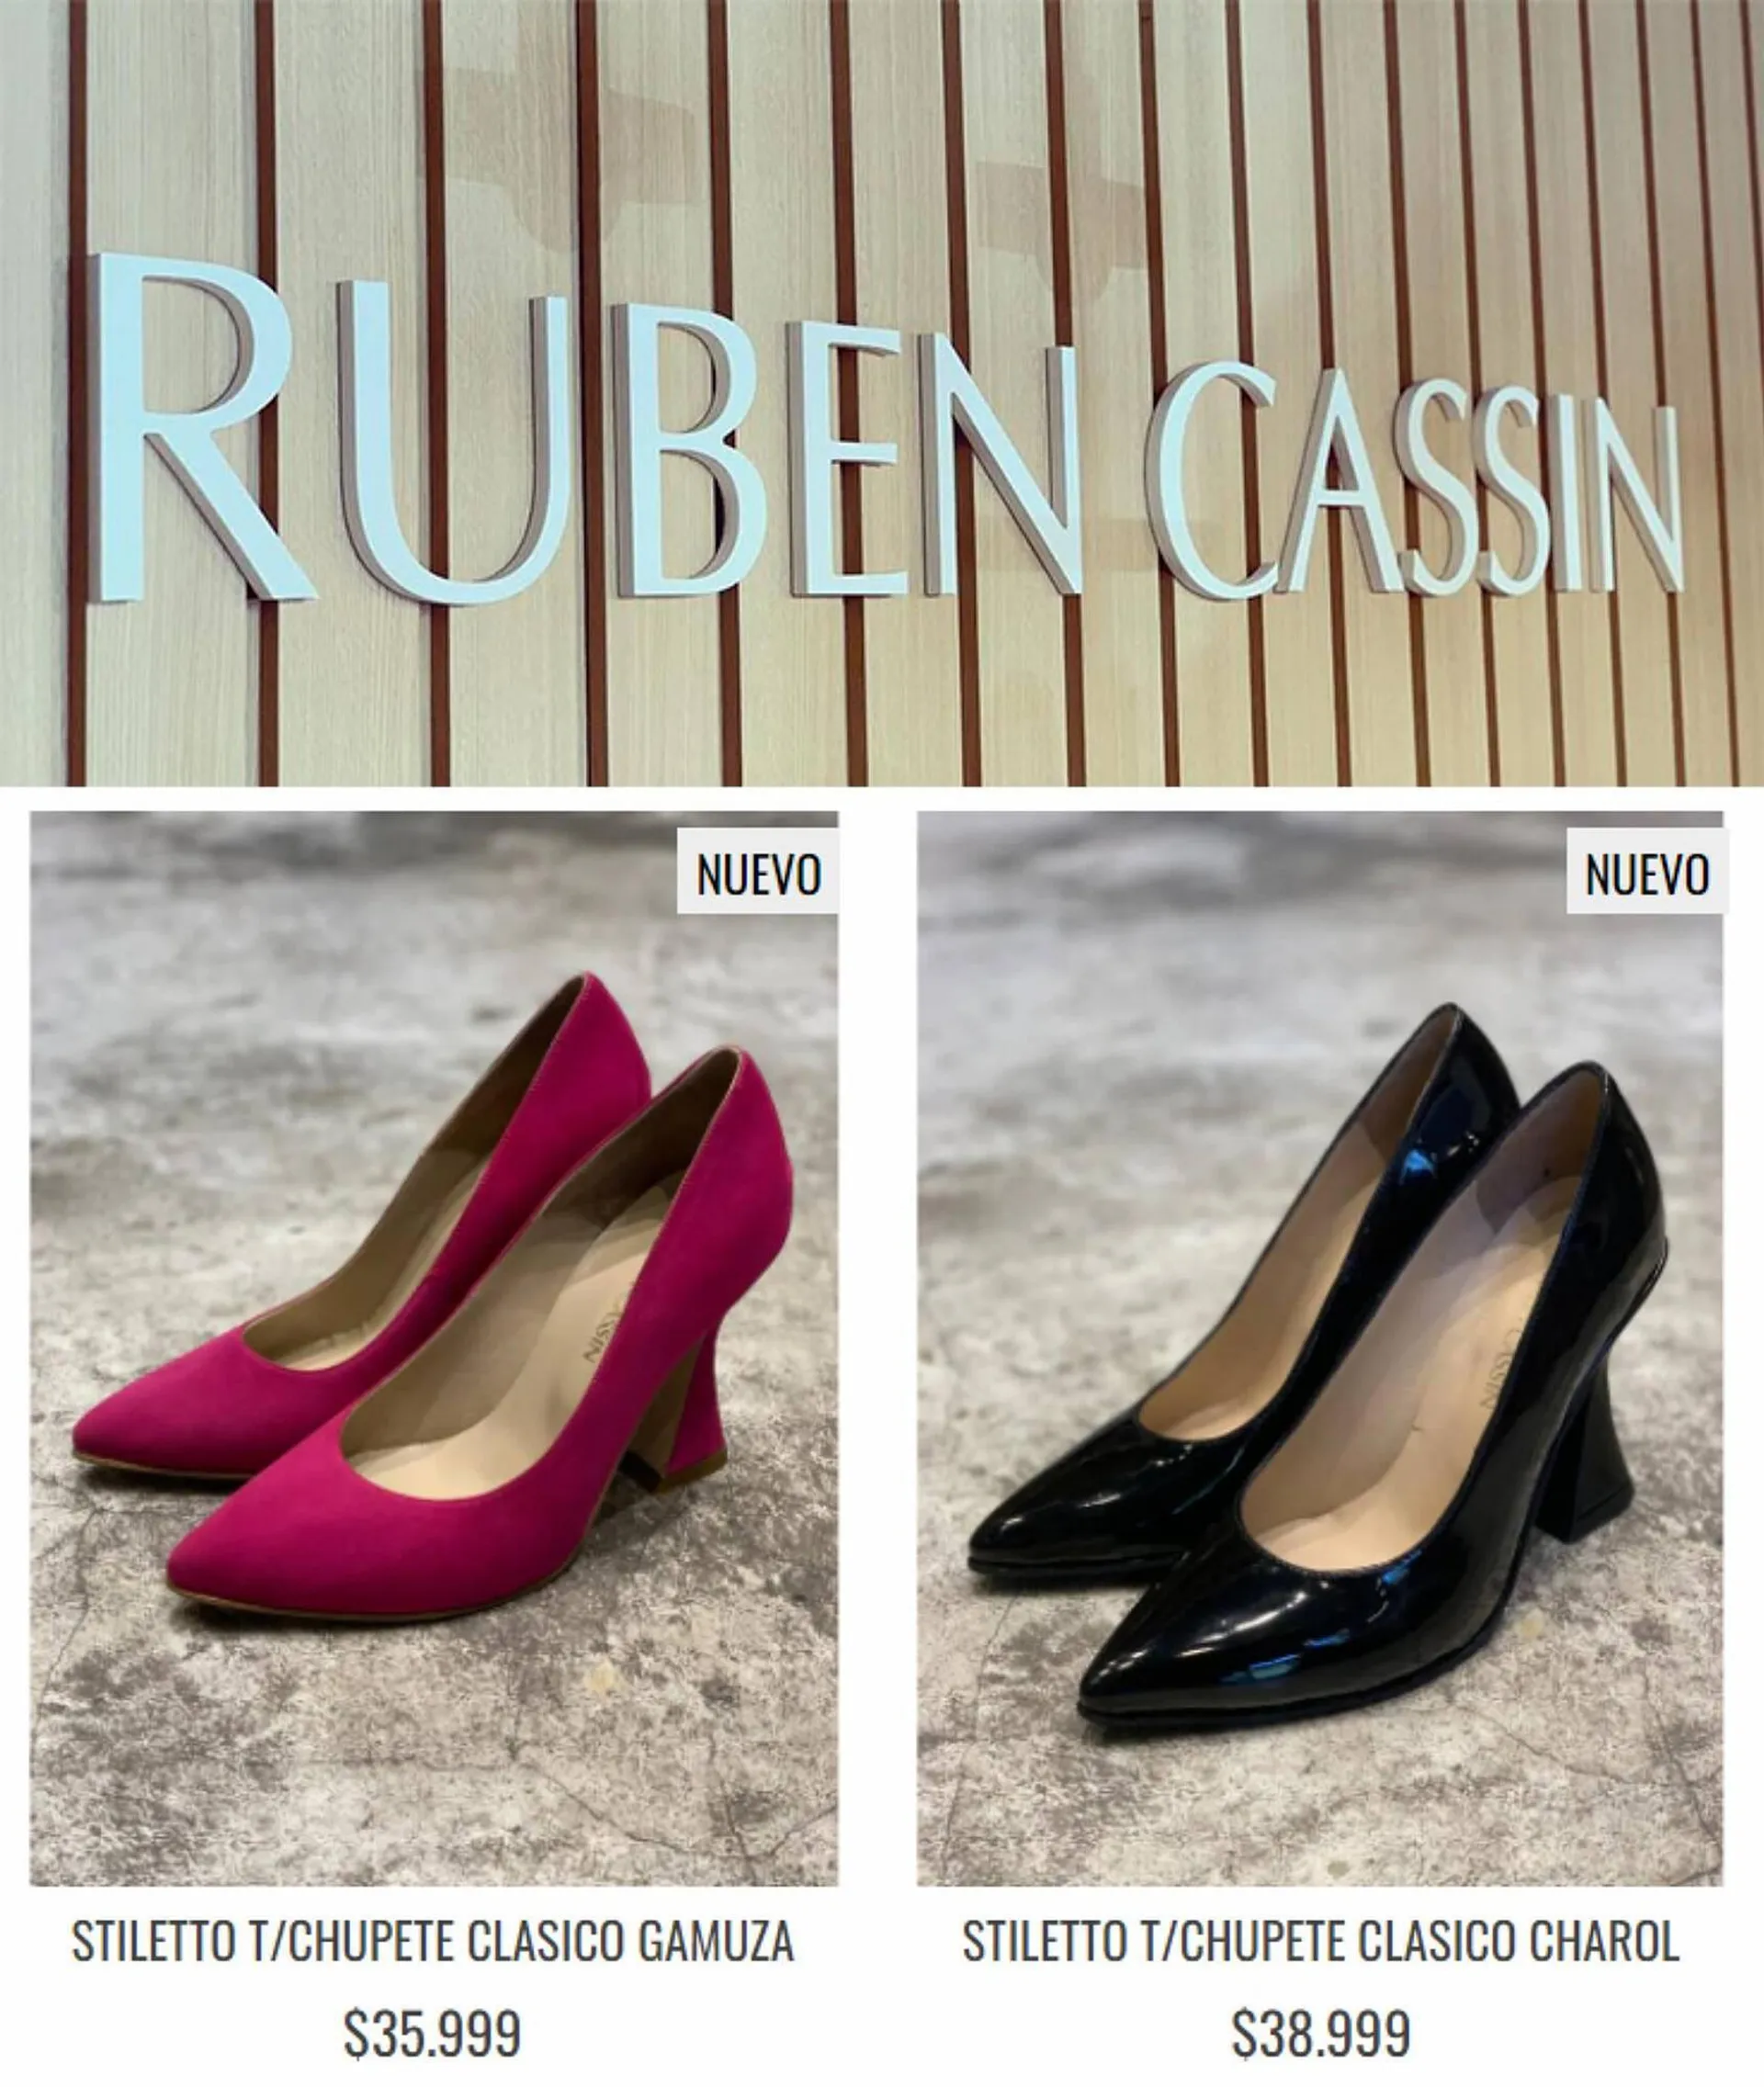 Catálogo Ruben Cassin - 2